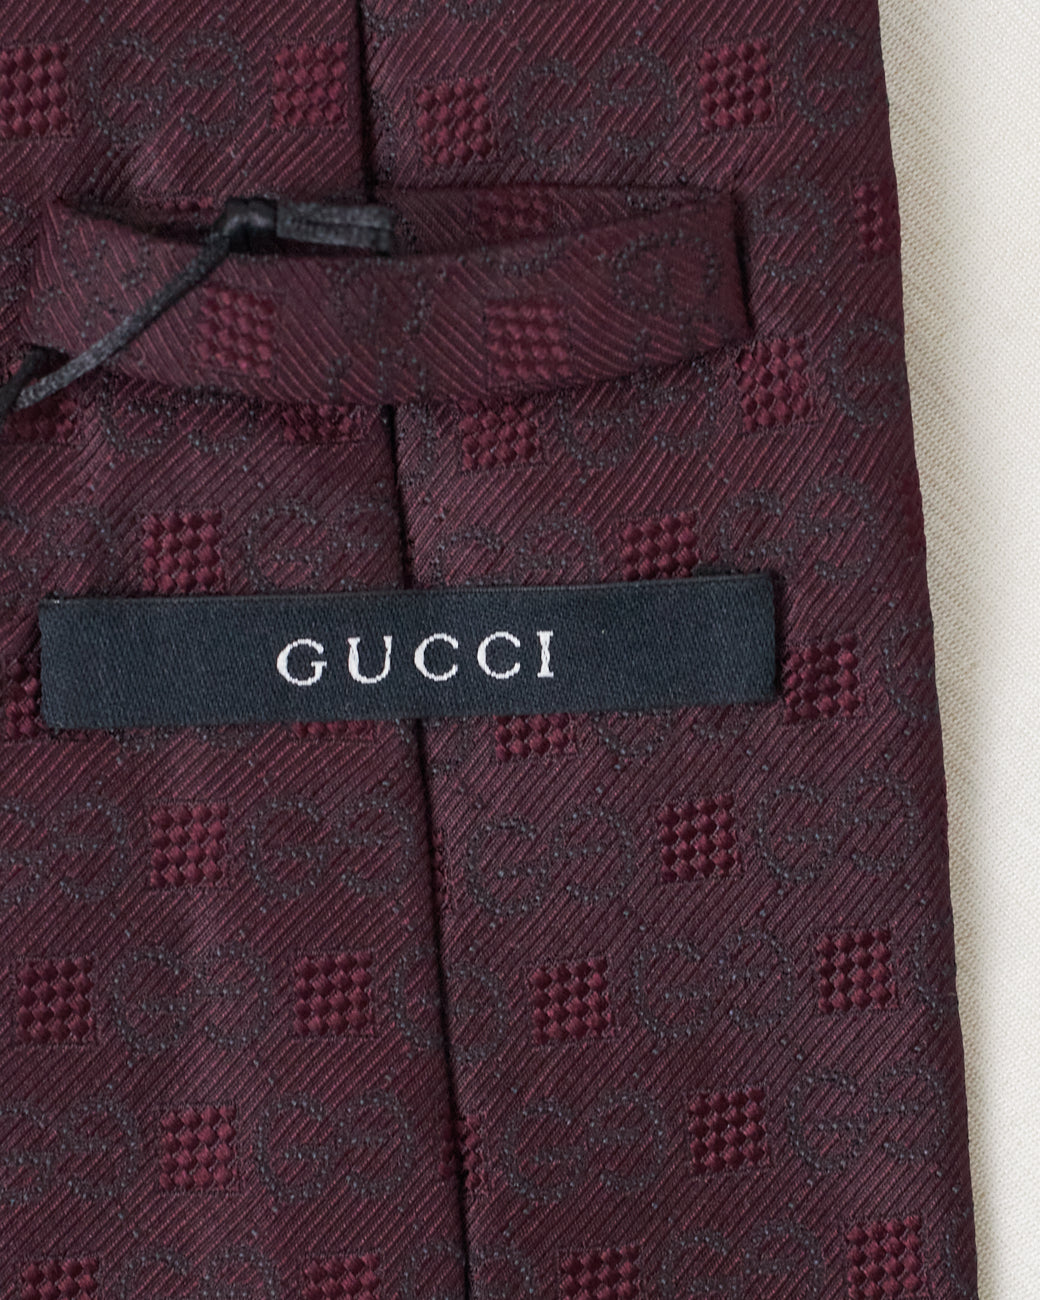 Cravate Monogramme Gucci Bordeaux 